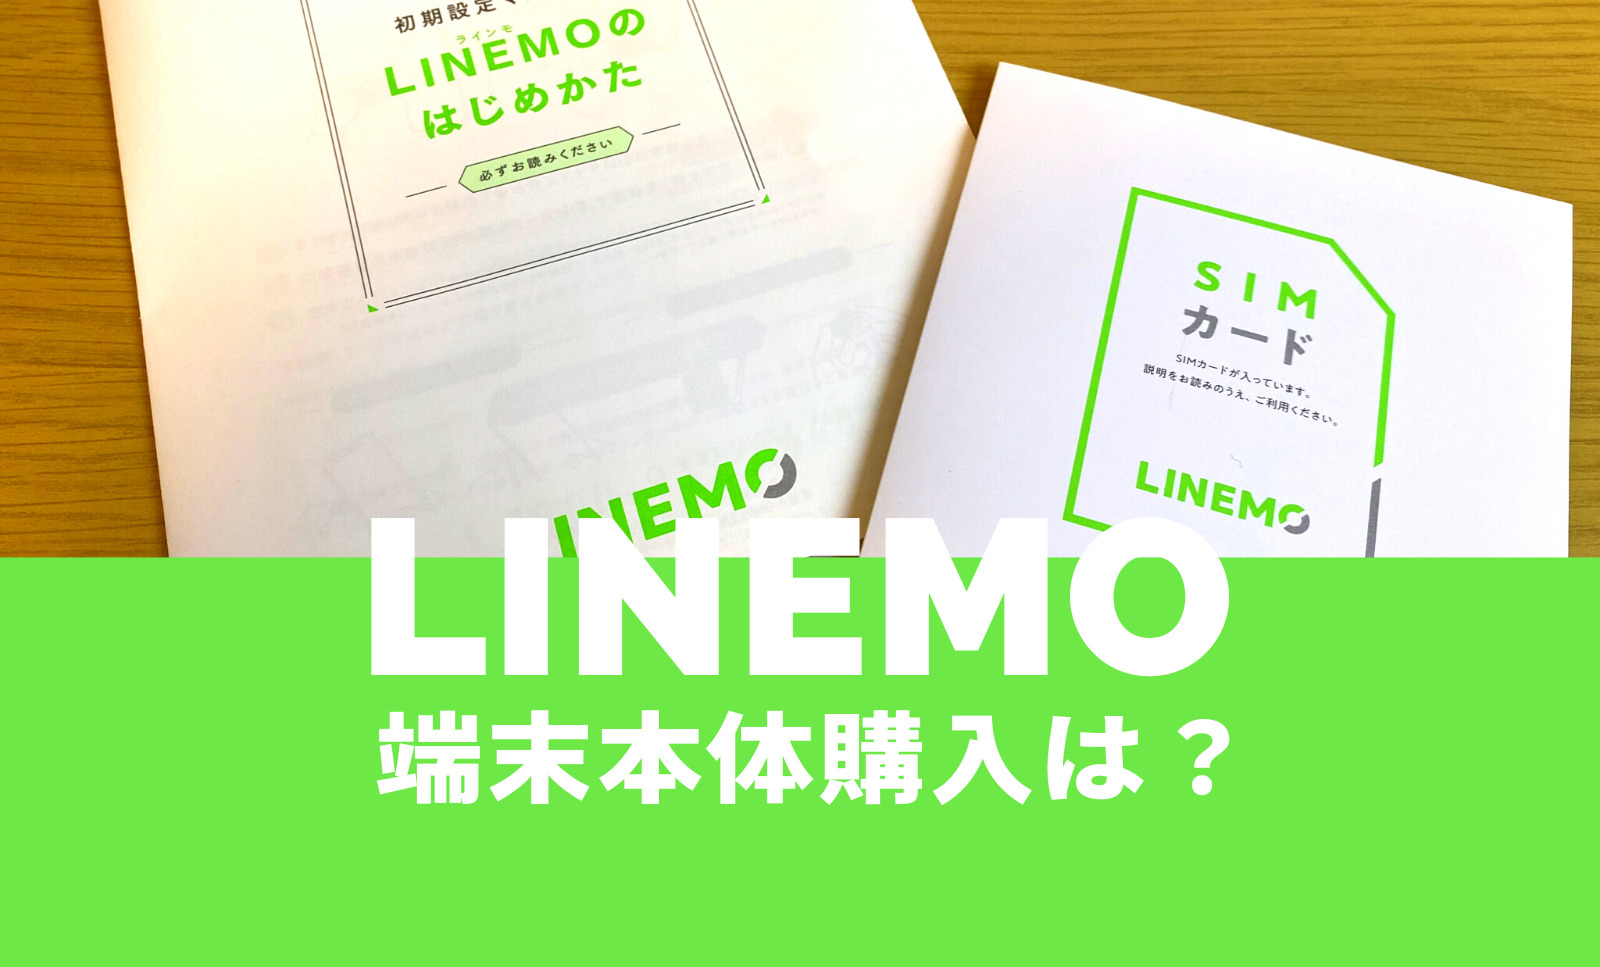 LINEMO(ラインモ)は端末セットなし、スマホ本体購入はできないのサムネイル画像